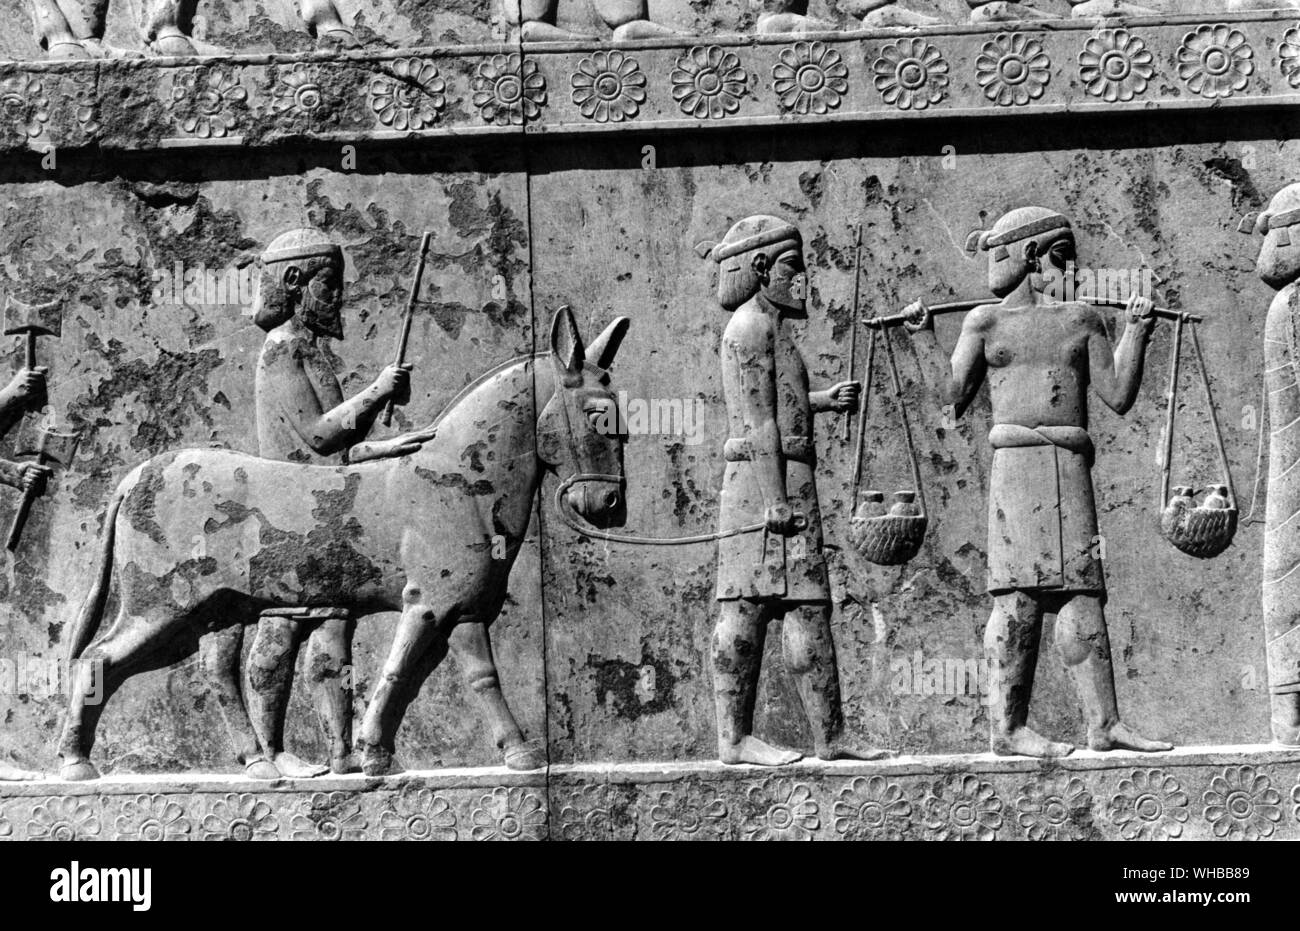 Persepolis : ancienne ville de Perse , capitale de l'Empire perse , fondée par Darius . Près de Shiraz, Iran moderne . Banque D'Images